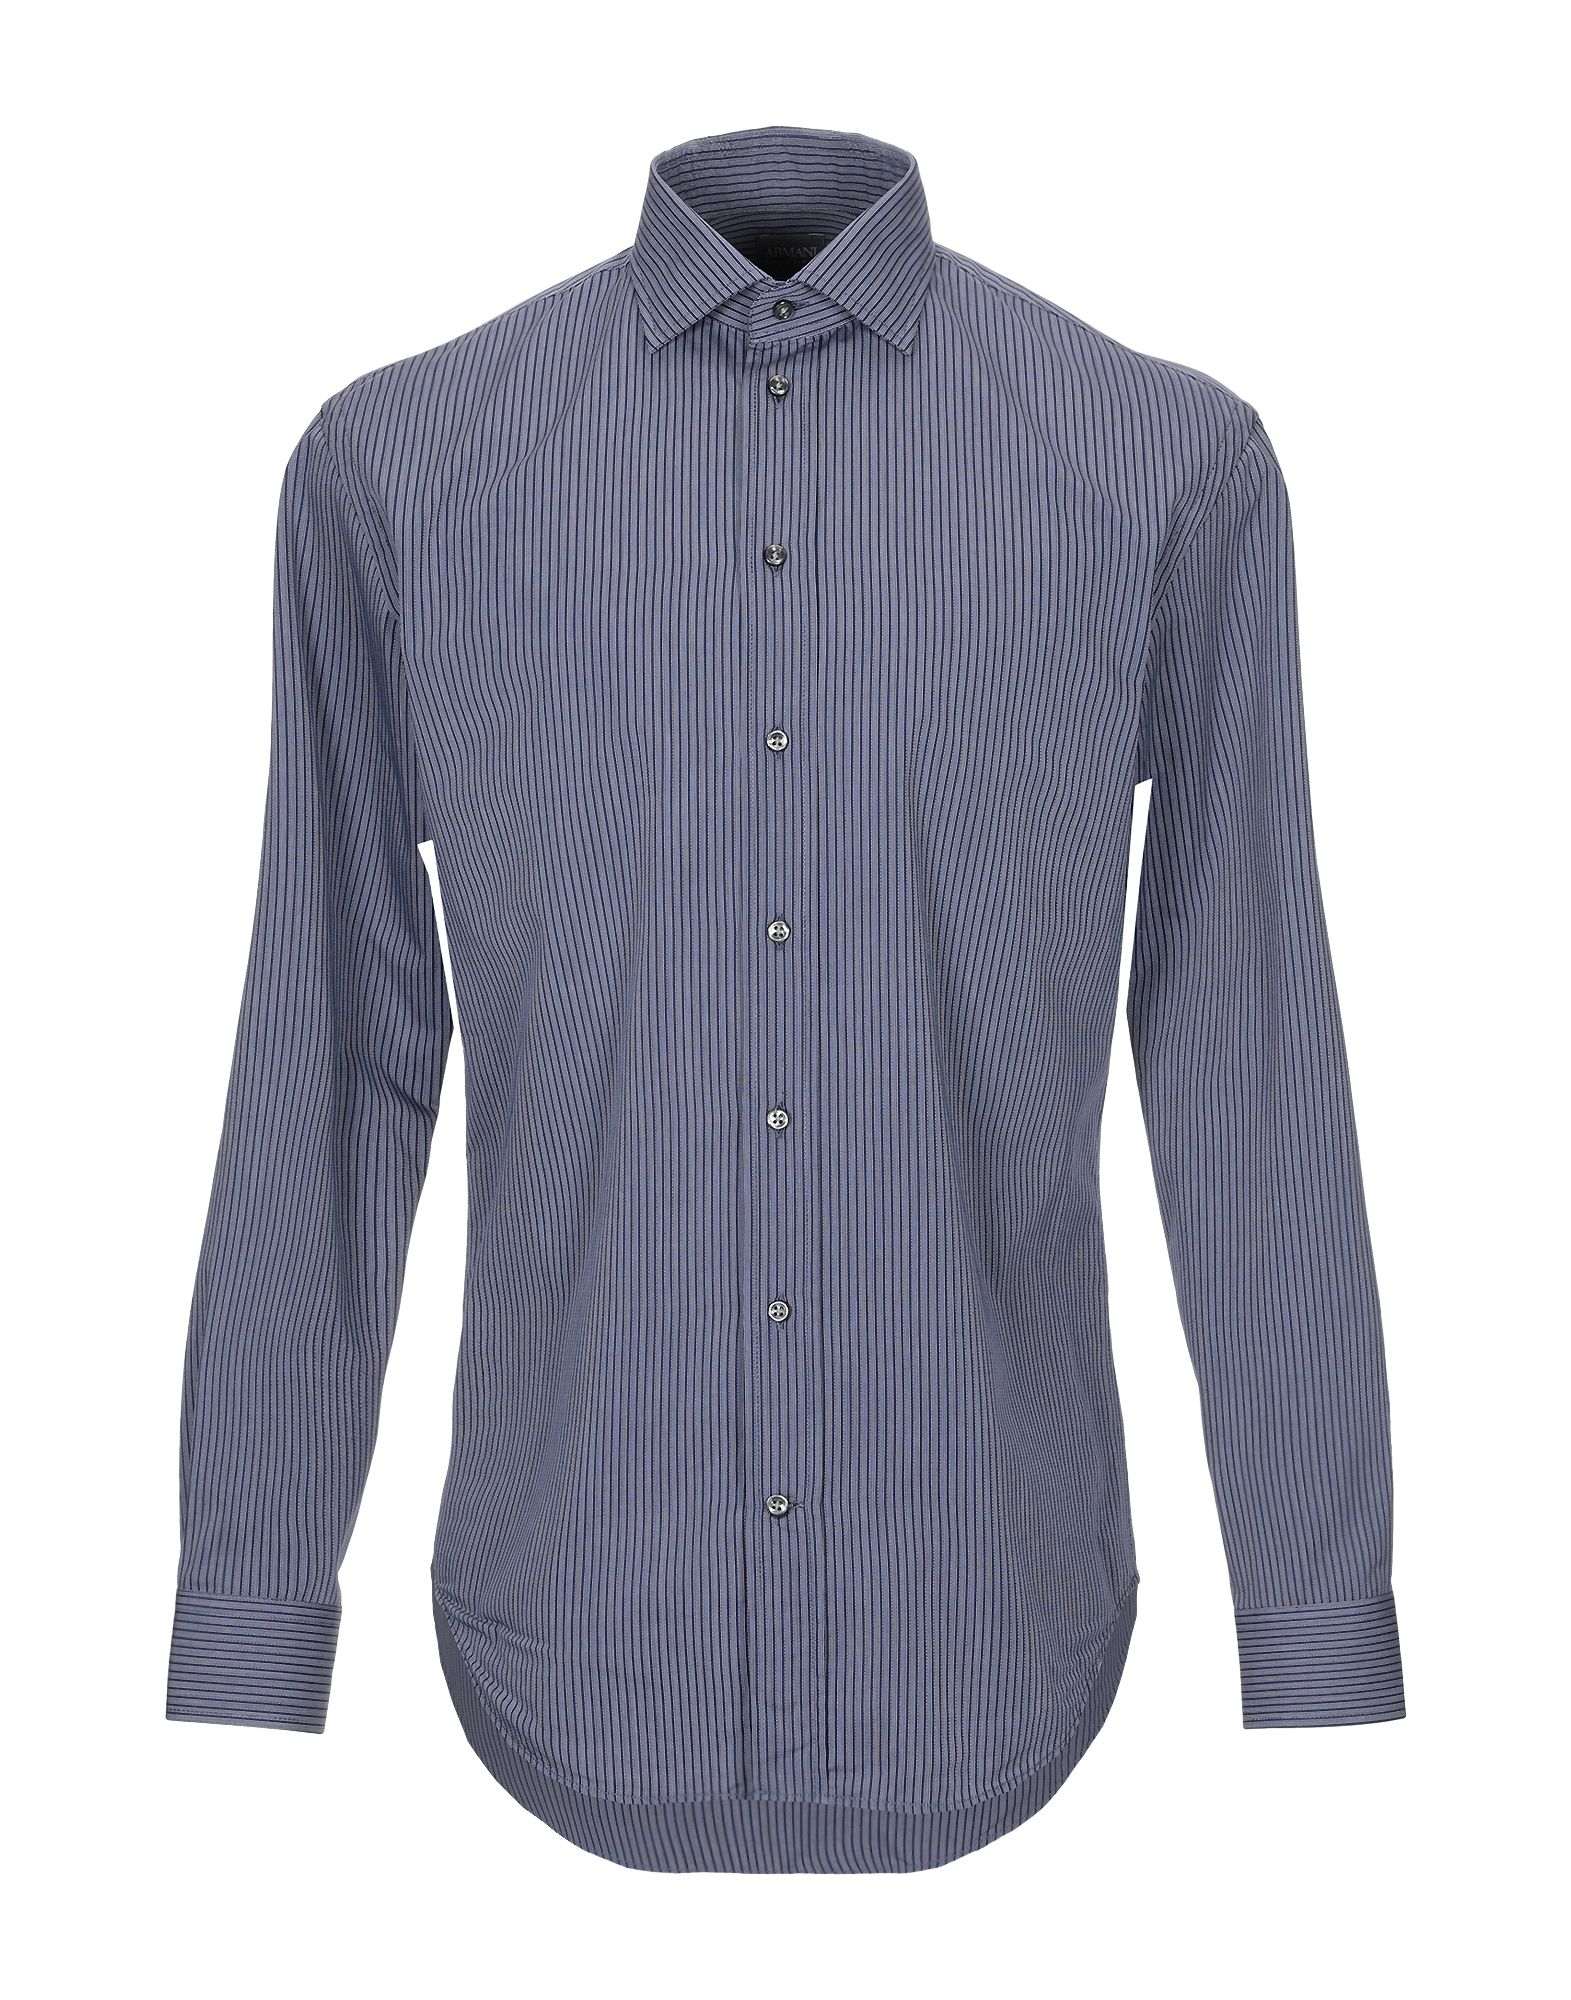 アルマーニ コレッツィオーニ(ARMANI COLLEZIONI) メンズシャツ・ワイシャツ | 通販・人気ランキング - 価格.com